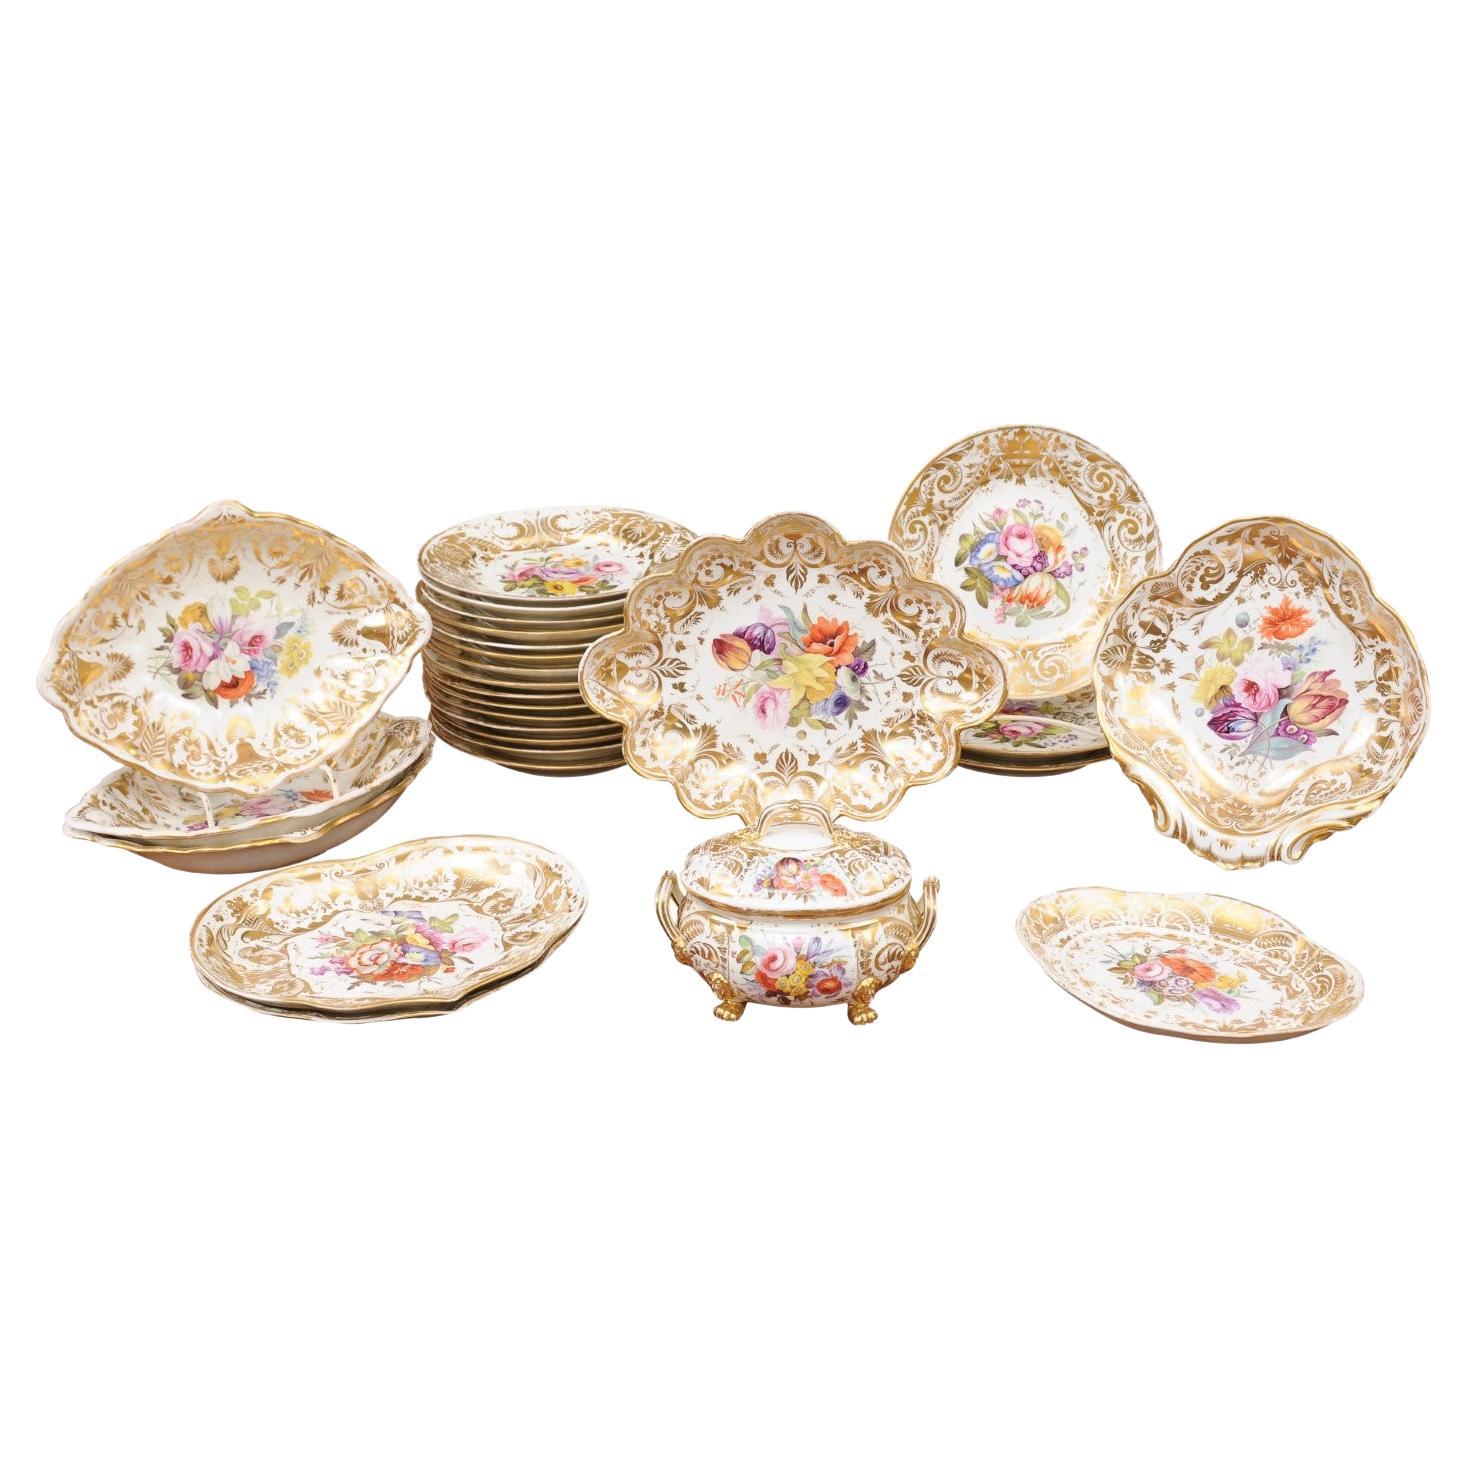 Ensemble de services à dessert en porcelaine anglaise du début du 19e siècle du Derby